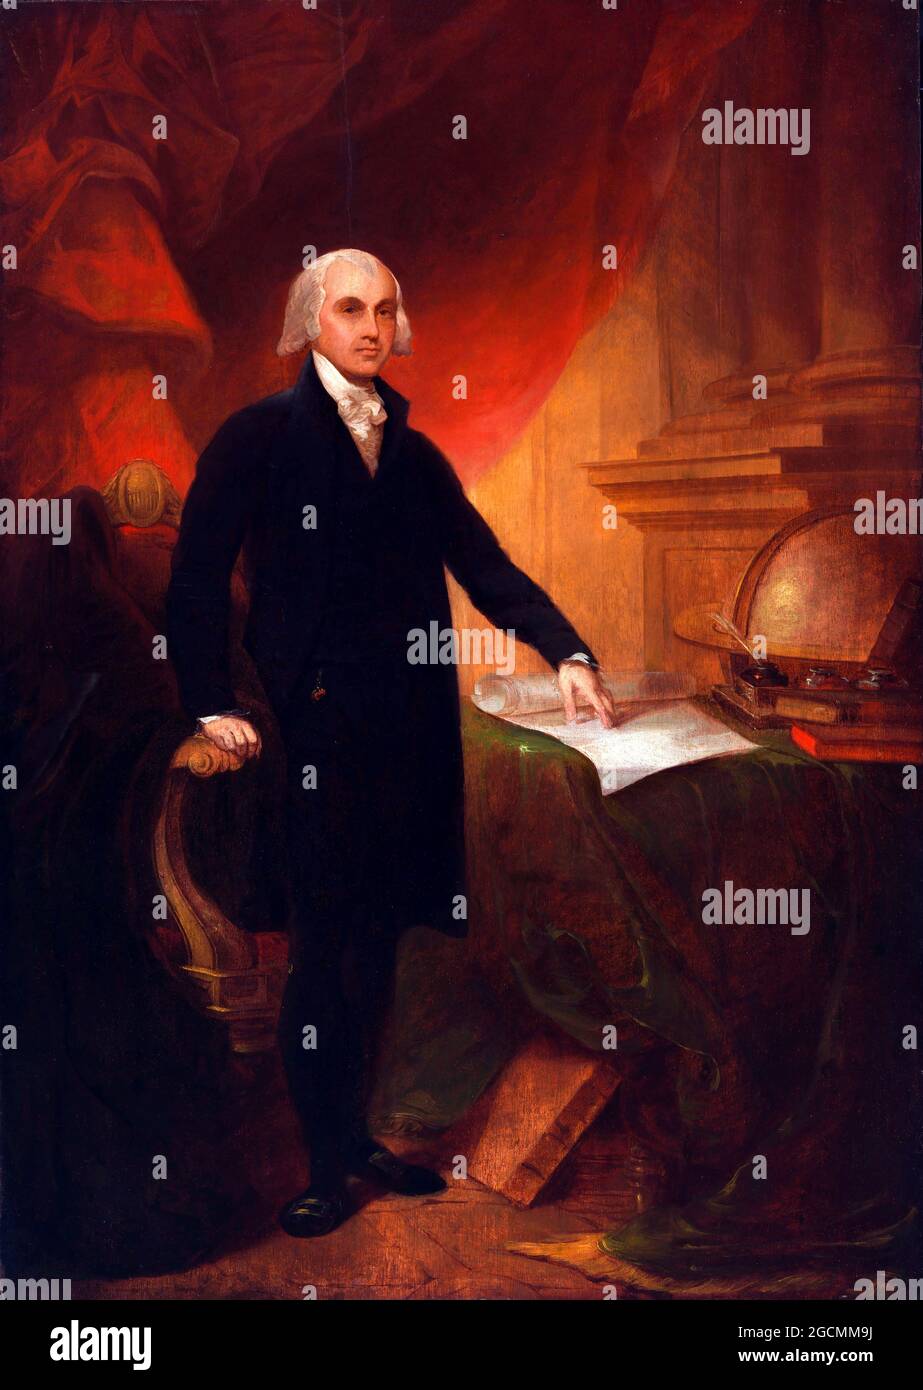 James Madison. Ritratto del 4° presidente degli Stati Uniti, James Madison (1751-1836) di Thomas Sully, olio su tela, 1809 Foto Stock